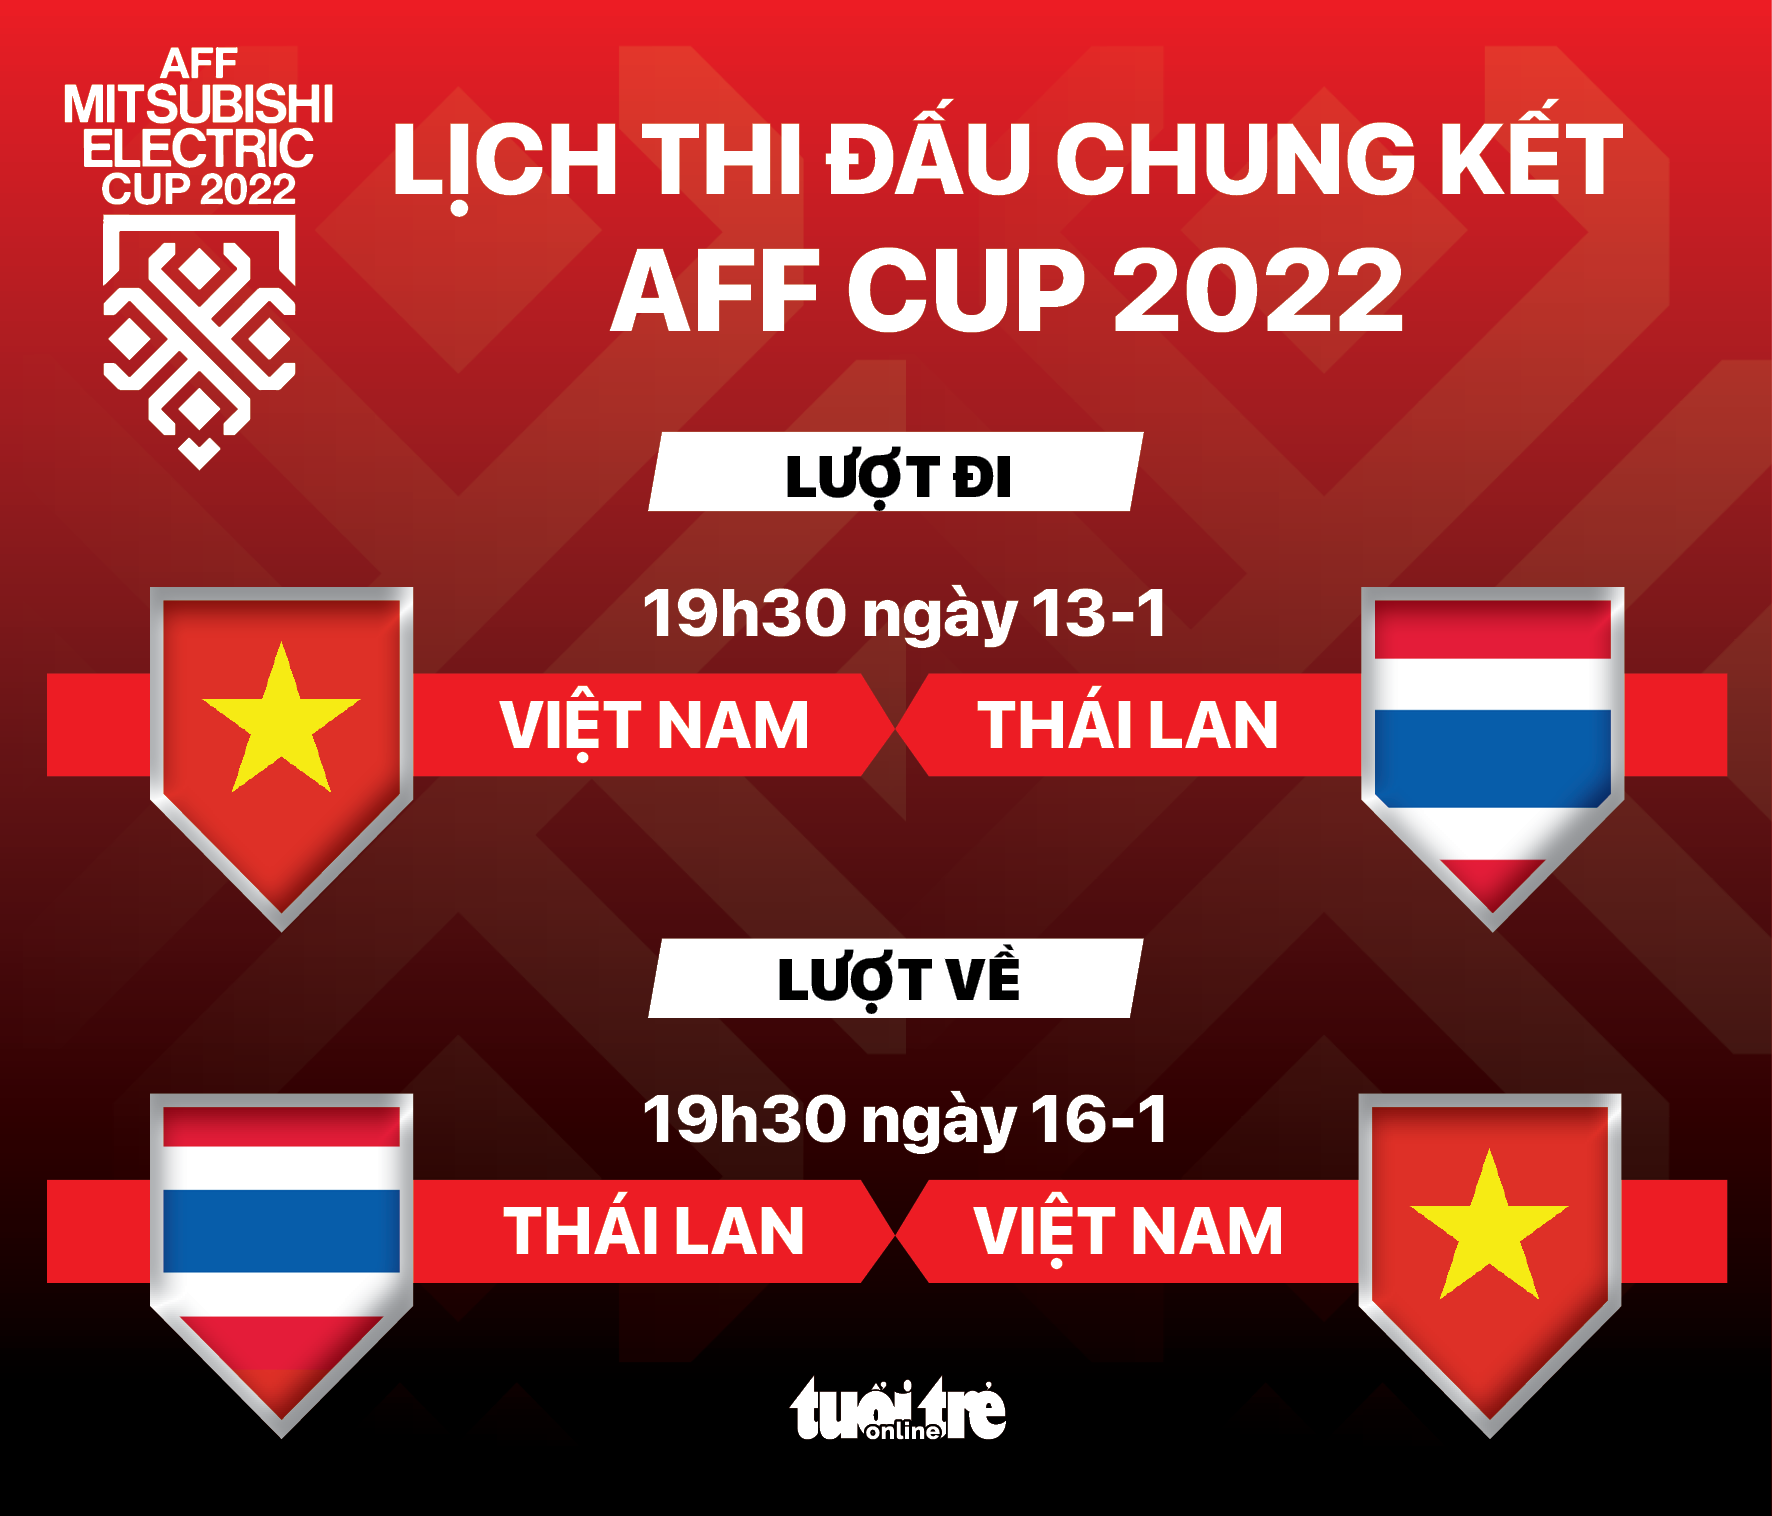 Lịch thi đấu chung kết AFF Cup 2022: Việt Nam - Thái Lan - Ảnh 1.